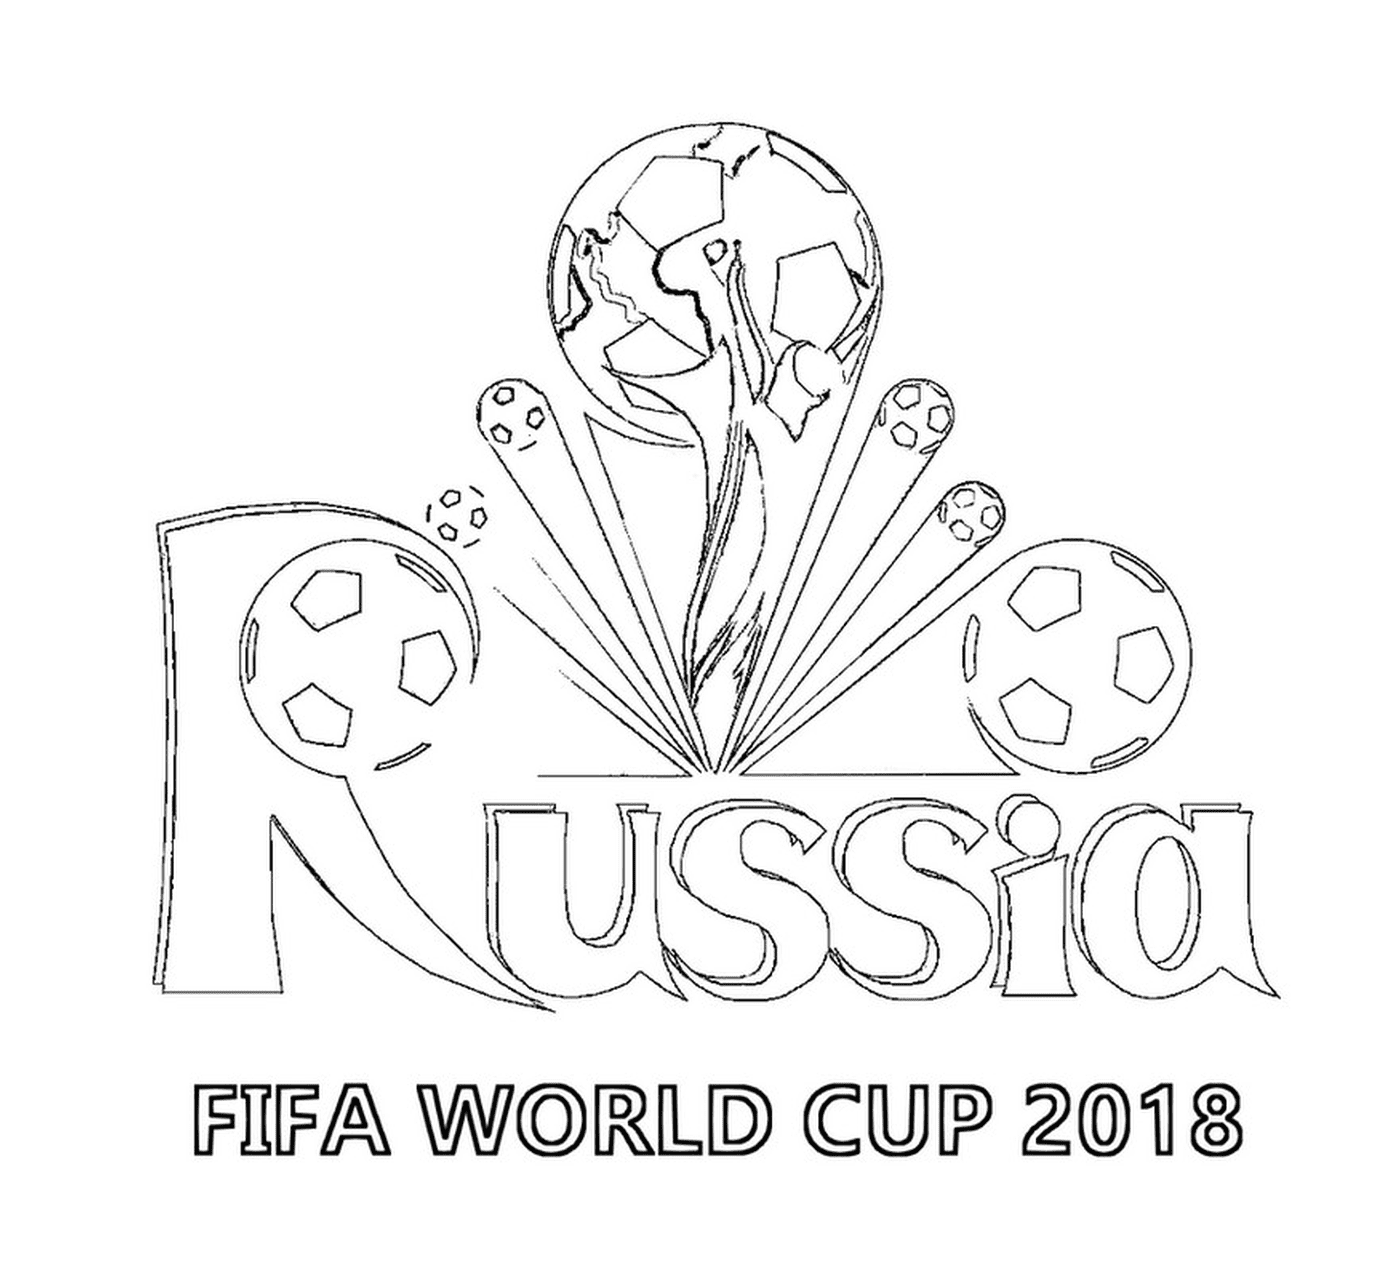  Copa do Mundo FIFA 2018, logo 